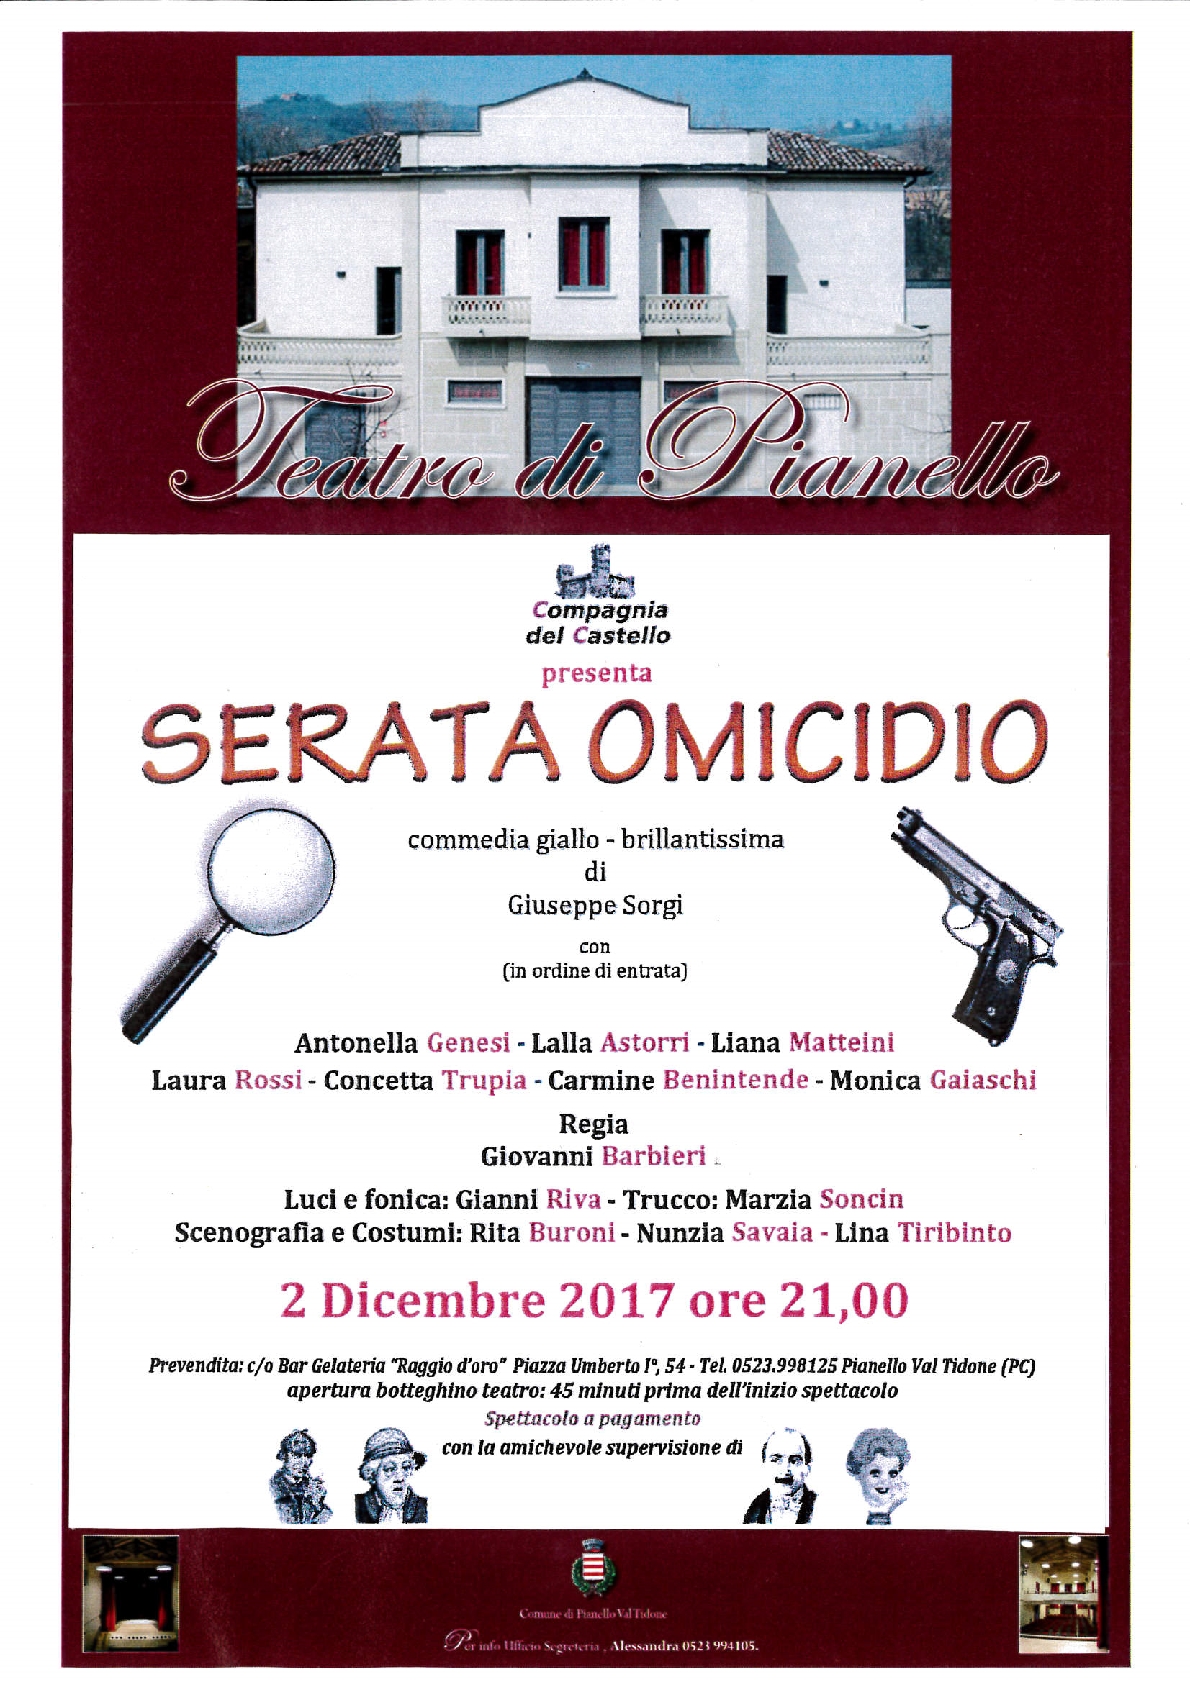 Teatro di Pianello - compagnia del castello Sabato 2 Dicembre 2017